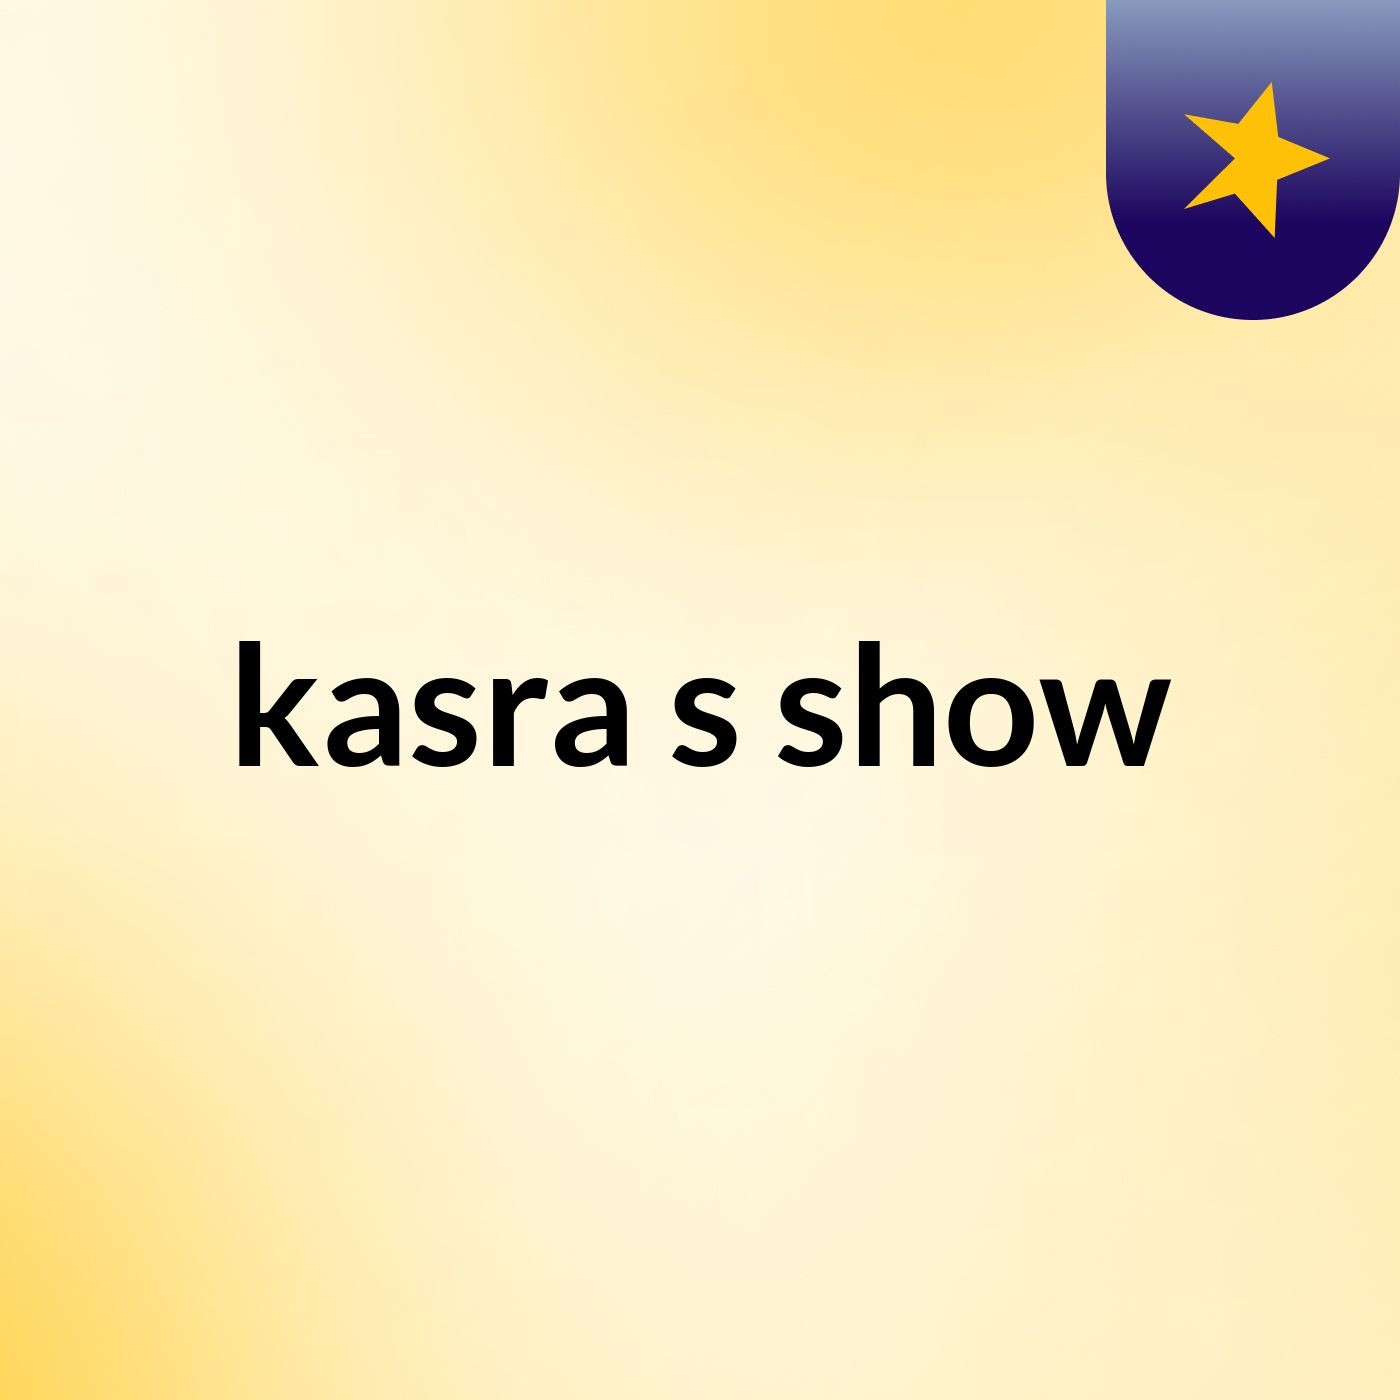 kasra's show